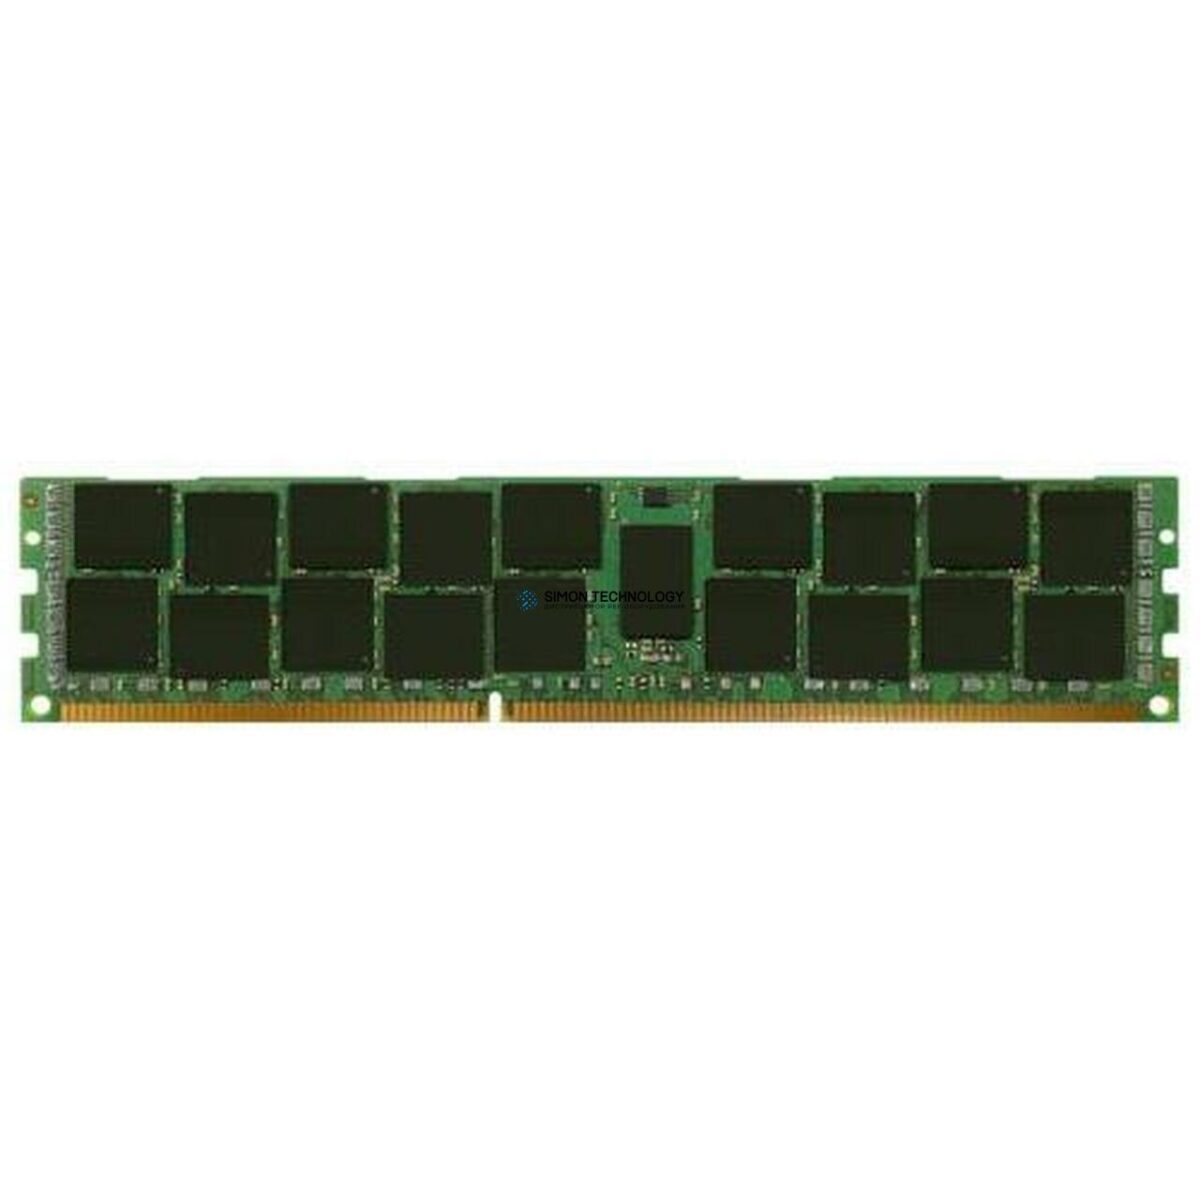 EMC DATADOMAIN DataDomain Memory 16GB Dimm (100-564-111)